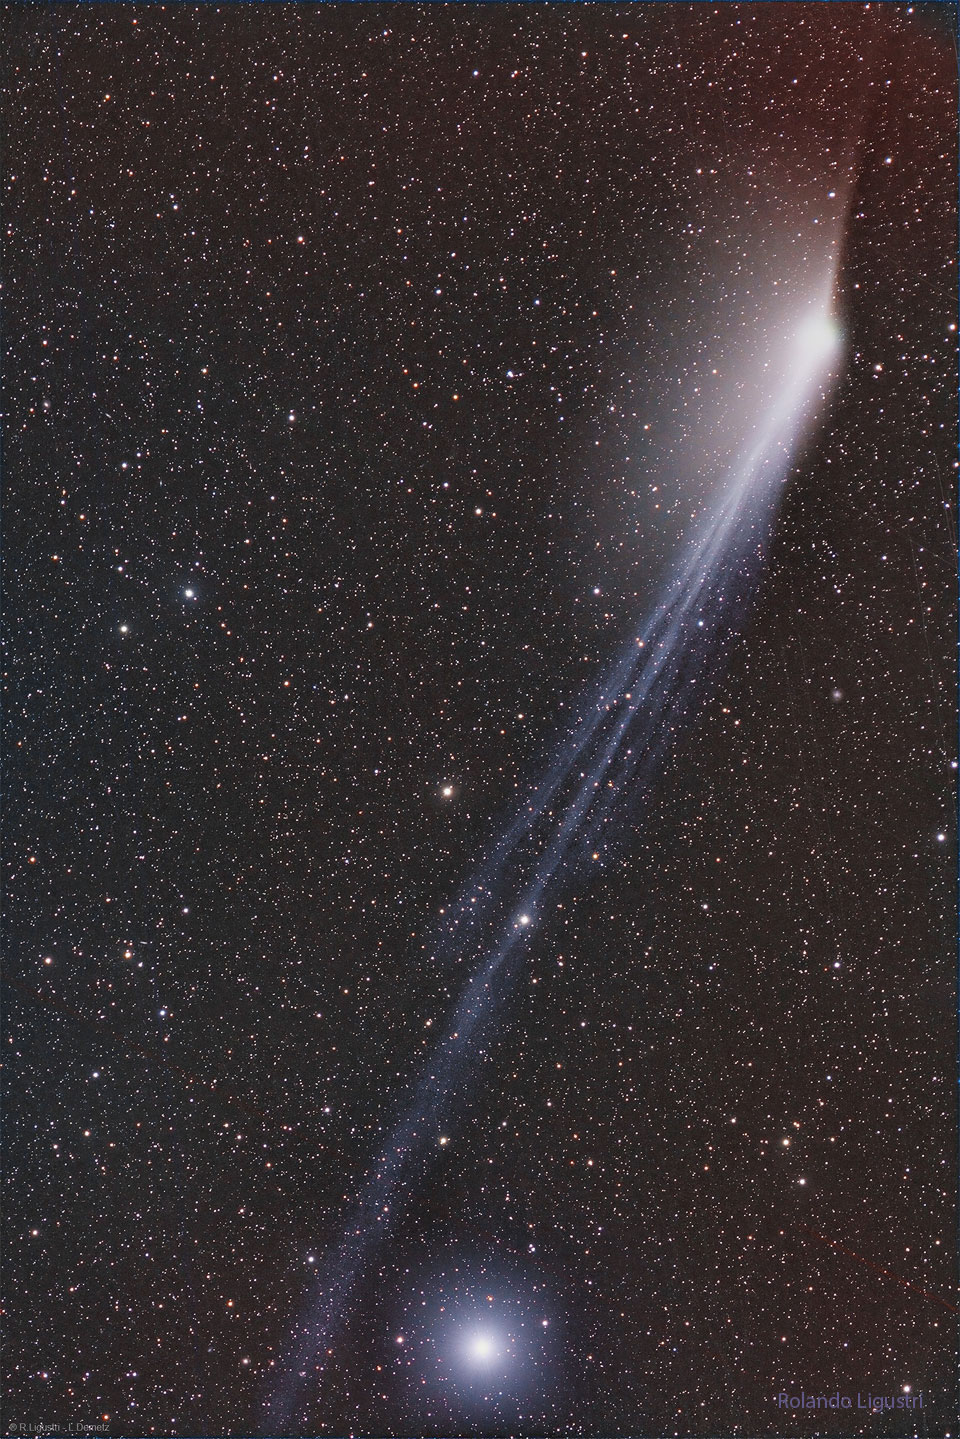 图中显示的是一片布满暗星的天空，其中的几缕光线延伸到了图像的长度。这是彗星12P的两条彗尾。在画面底部附近可以看到一颗特别明亮的恒星。有关更多详细信息，请参阅说明。